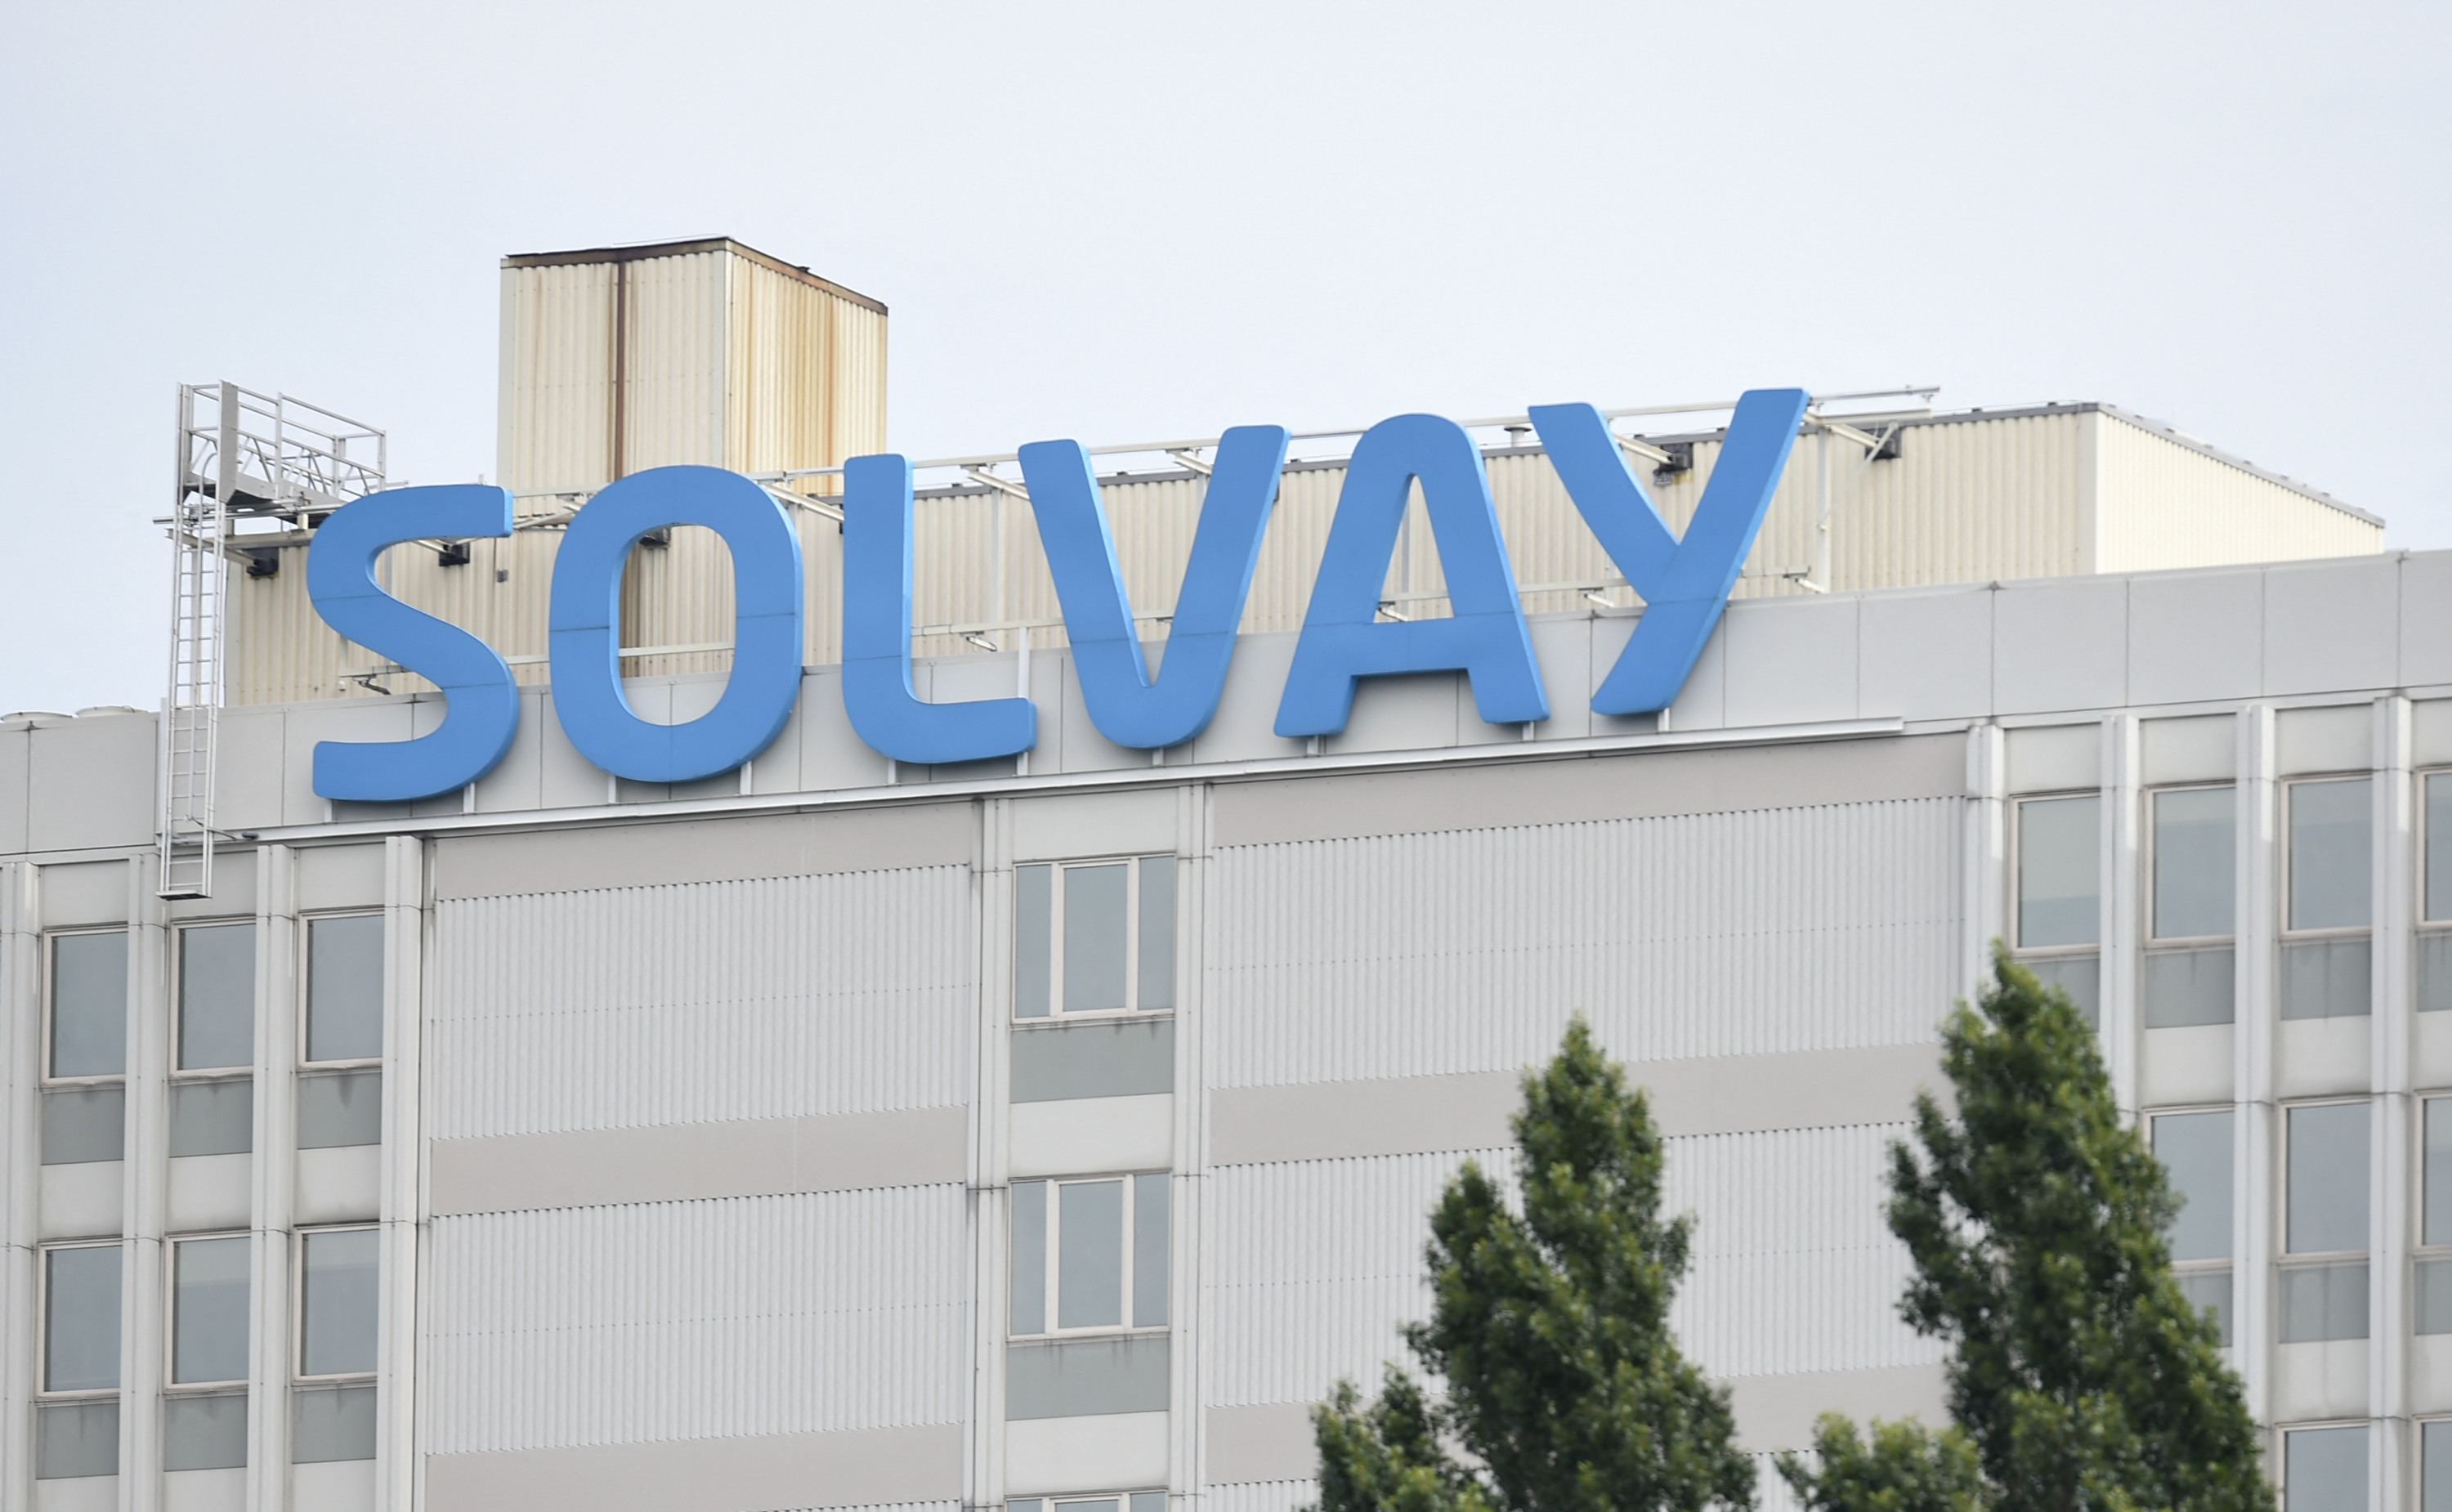 Le 16 septembre 2022, Solvay inaugure à La Rochelle une unité